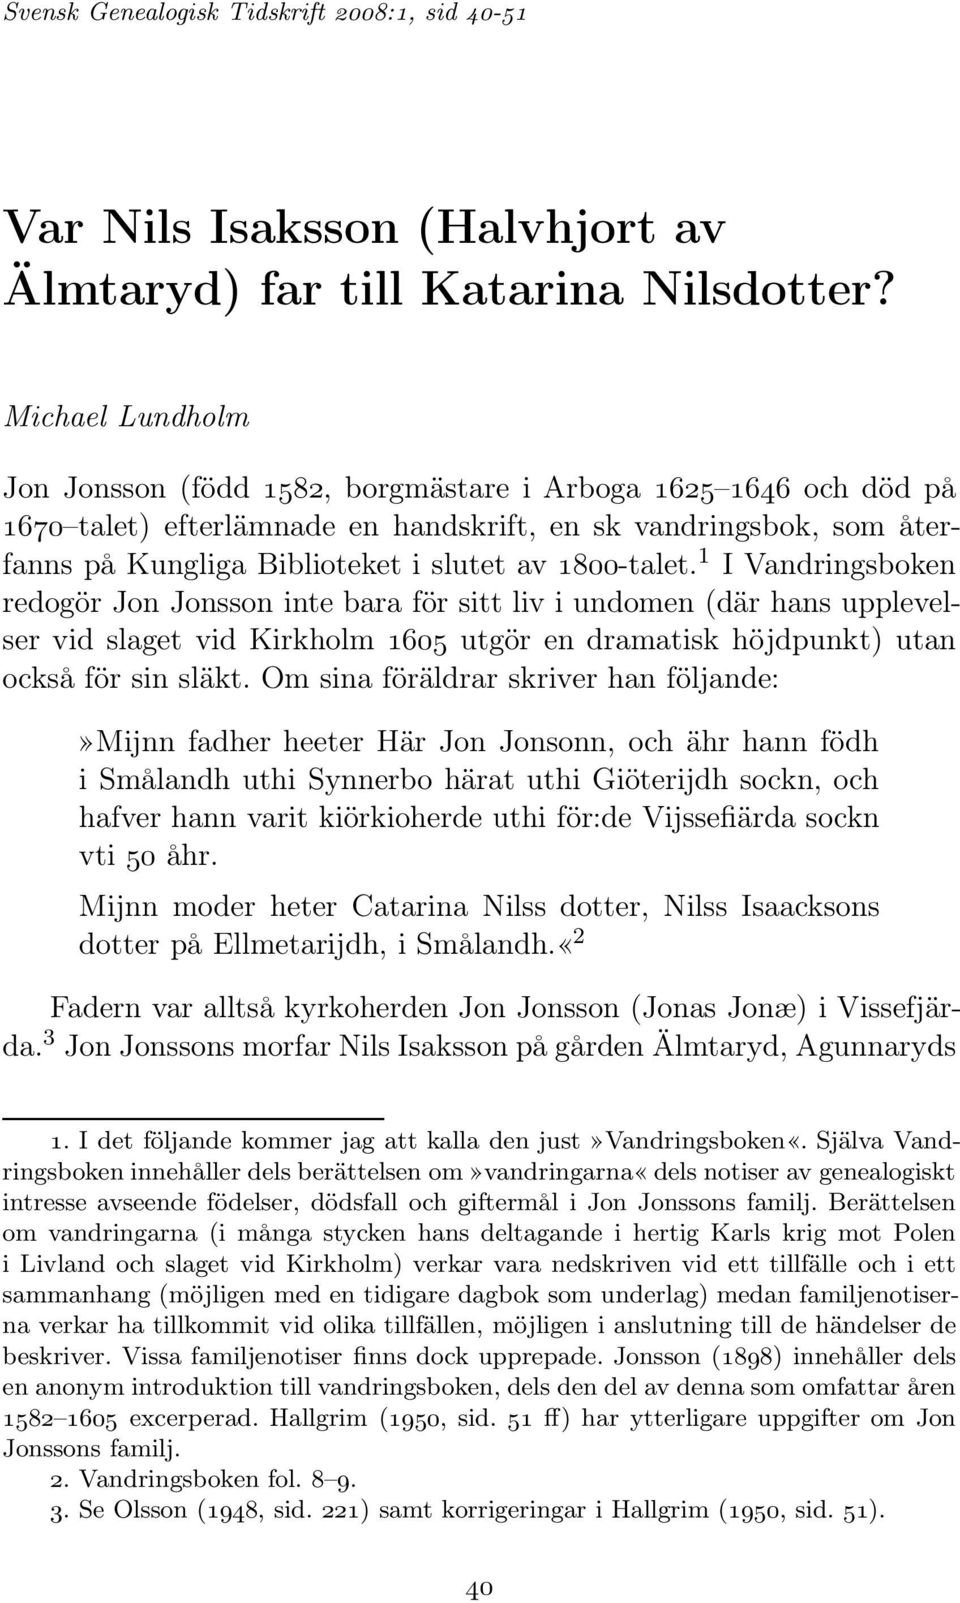 1800-talet. 1 IVandringsboken redogör Jon Jonsson inte bara för sitt liv i undomen (där hans upplevelser vid slaget vid Kirkholm 1605 utgör en dramatisk höjdpunkt) utan också för sin släkt.